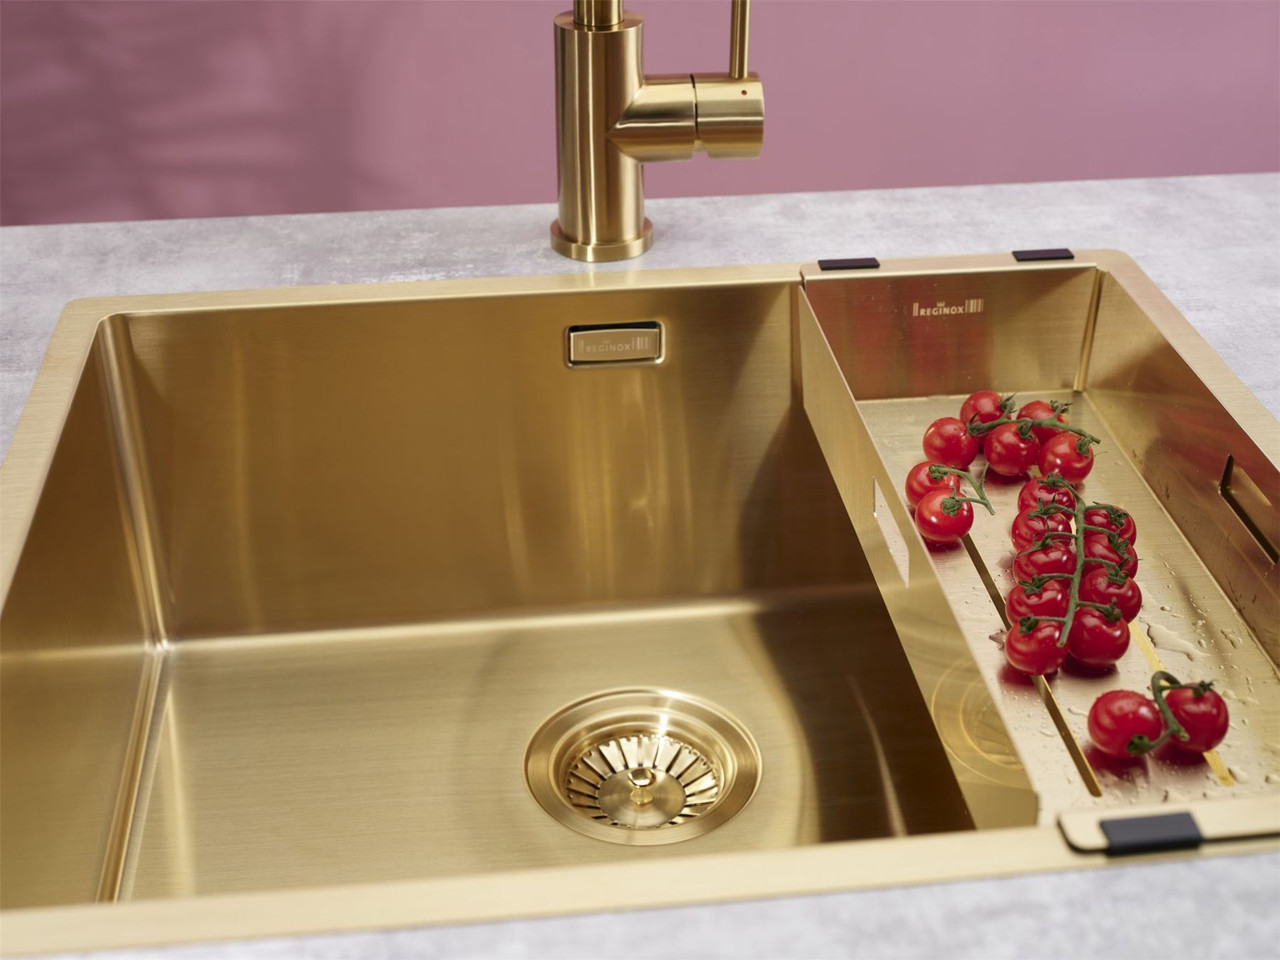 kitchen sink gold coast